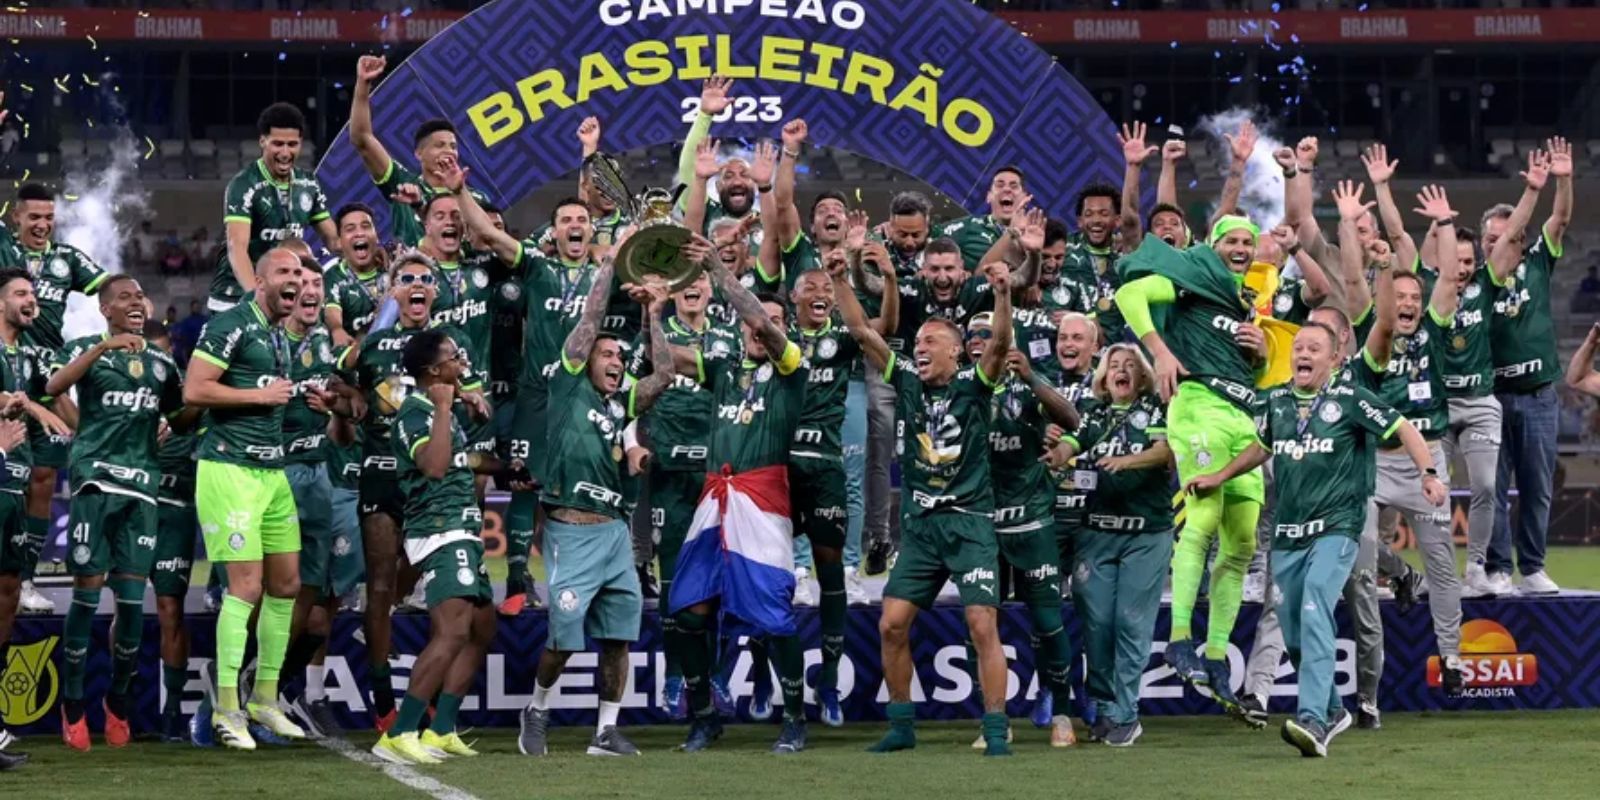 Qual a premiação do Campeonato Paulista? Quanto ganha o campeão?